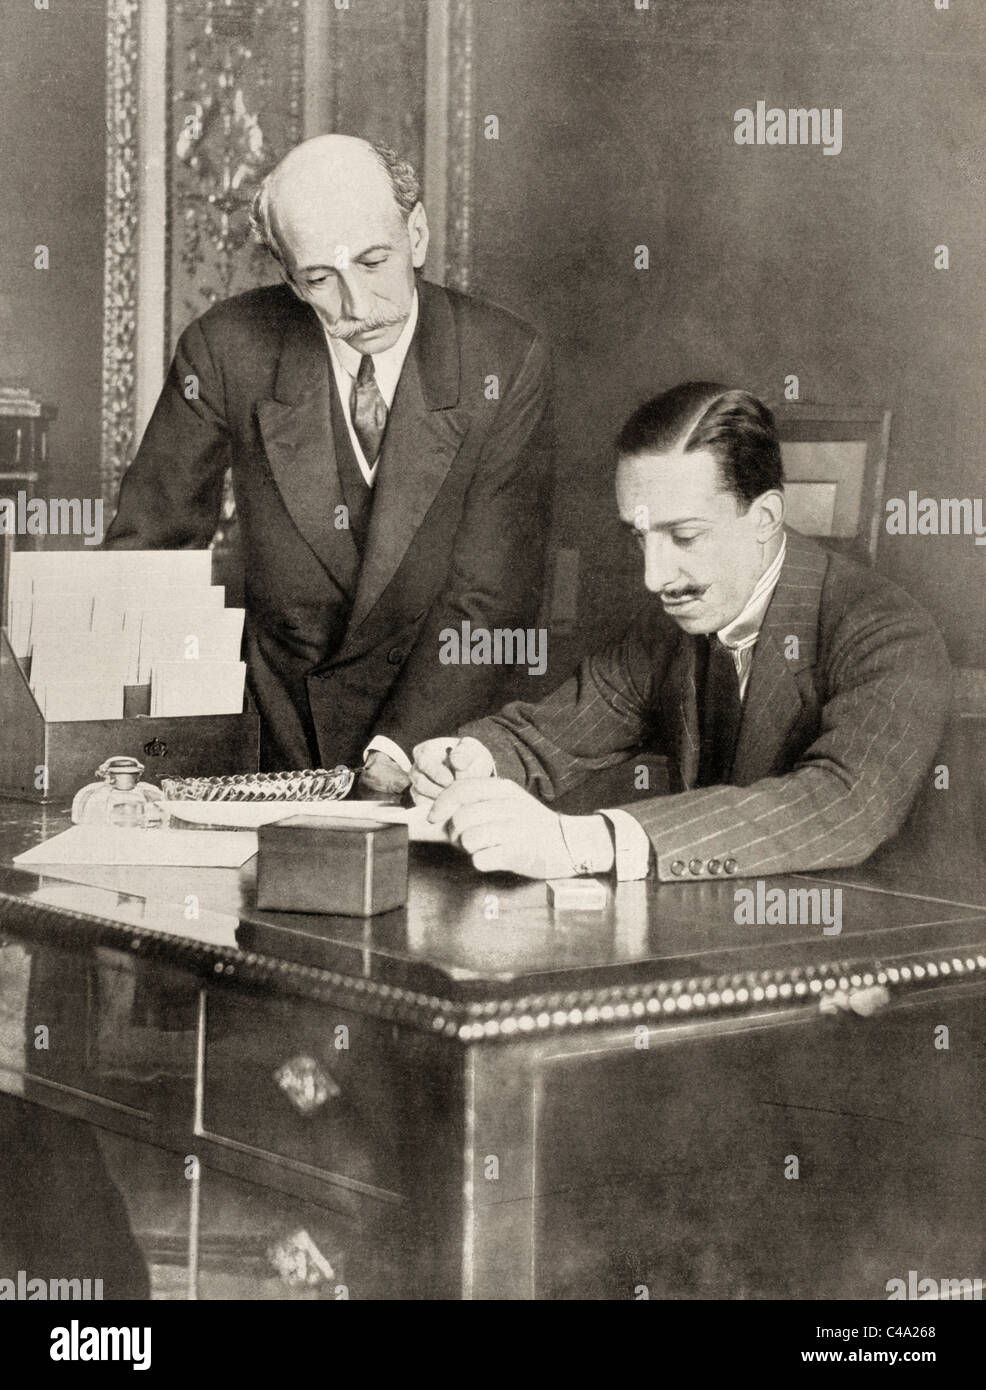 Alfonso XIII de Borbón, 1886 – 1941. Roi d'Espagne de sa naissance jusqu'à la proclamation de la deuxième République en 1931. Vu ici avec Eduardo Dato Iradier, Presidente del Consejo. Banque D'Images